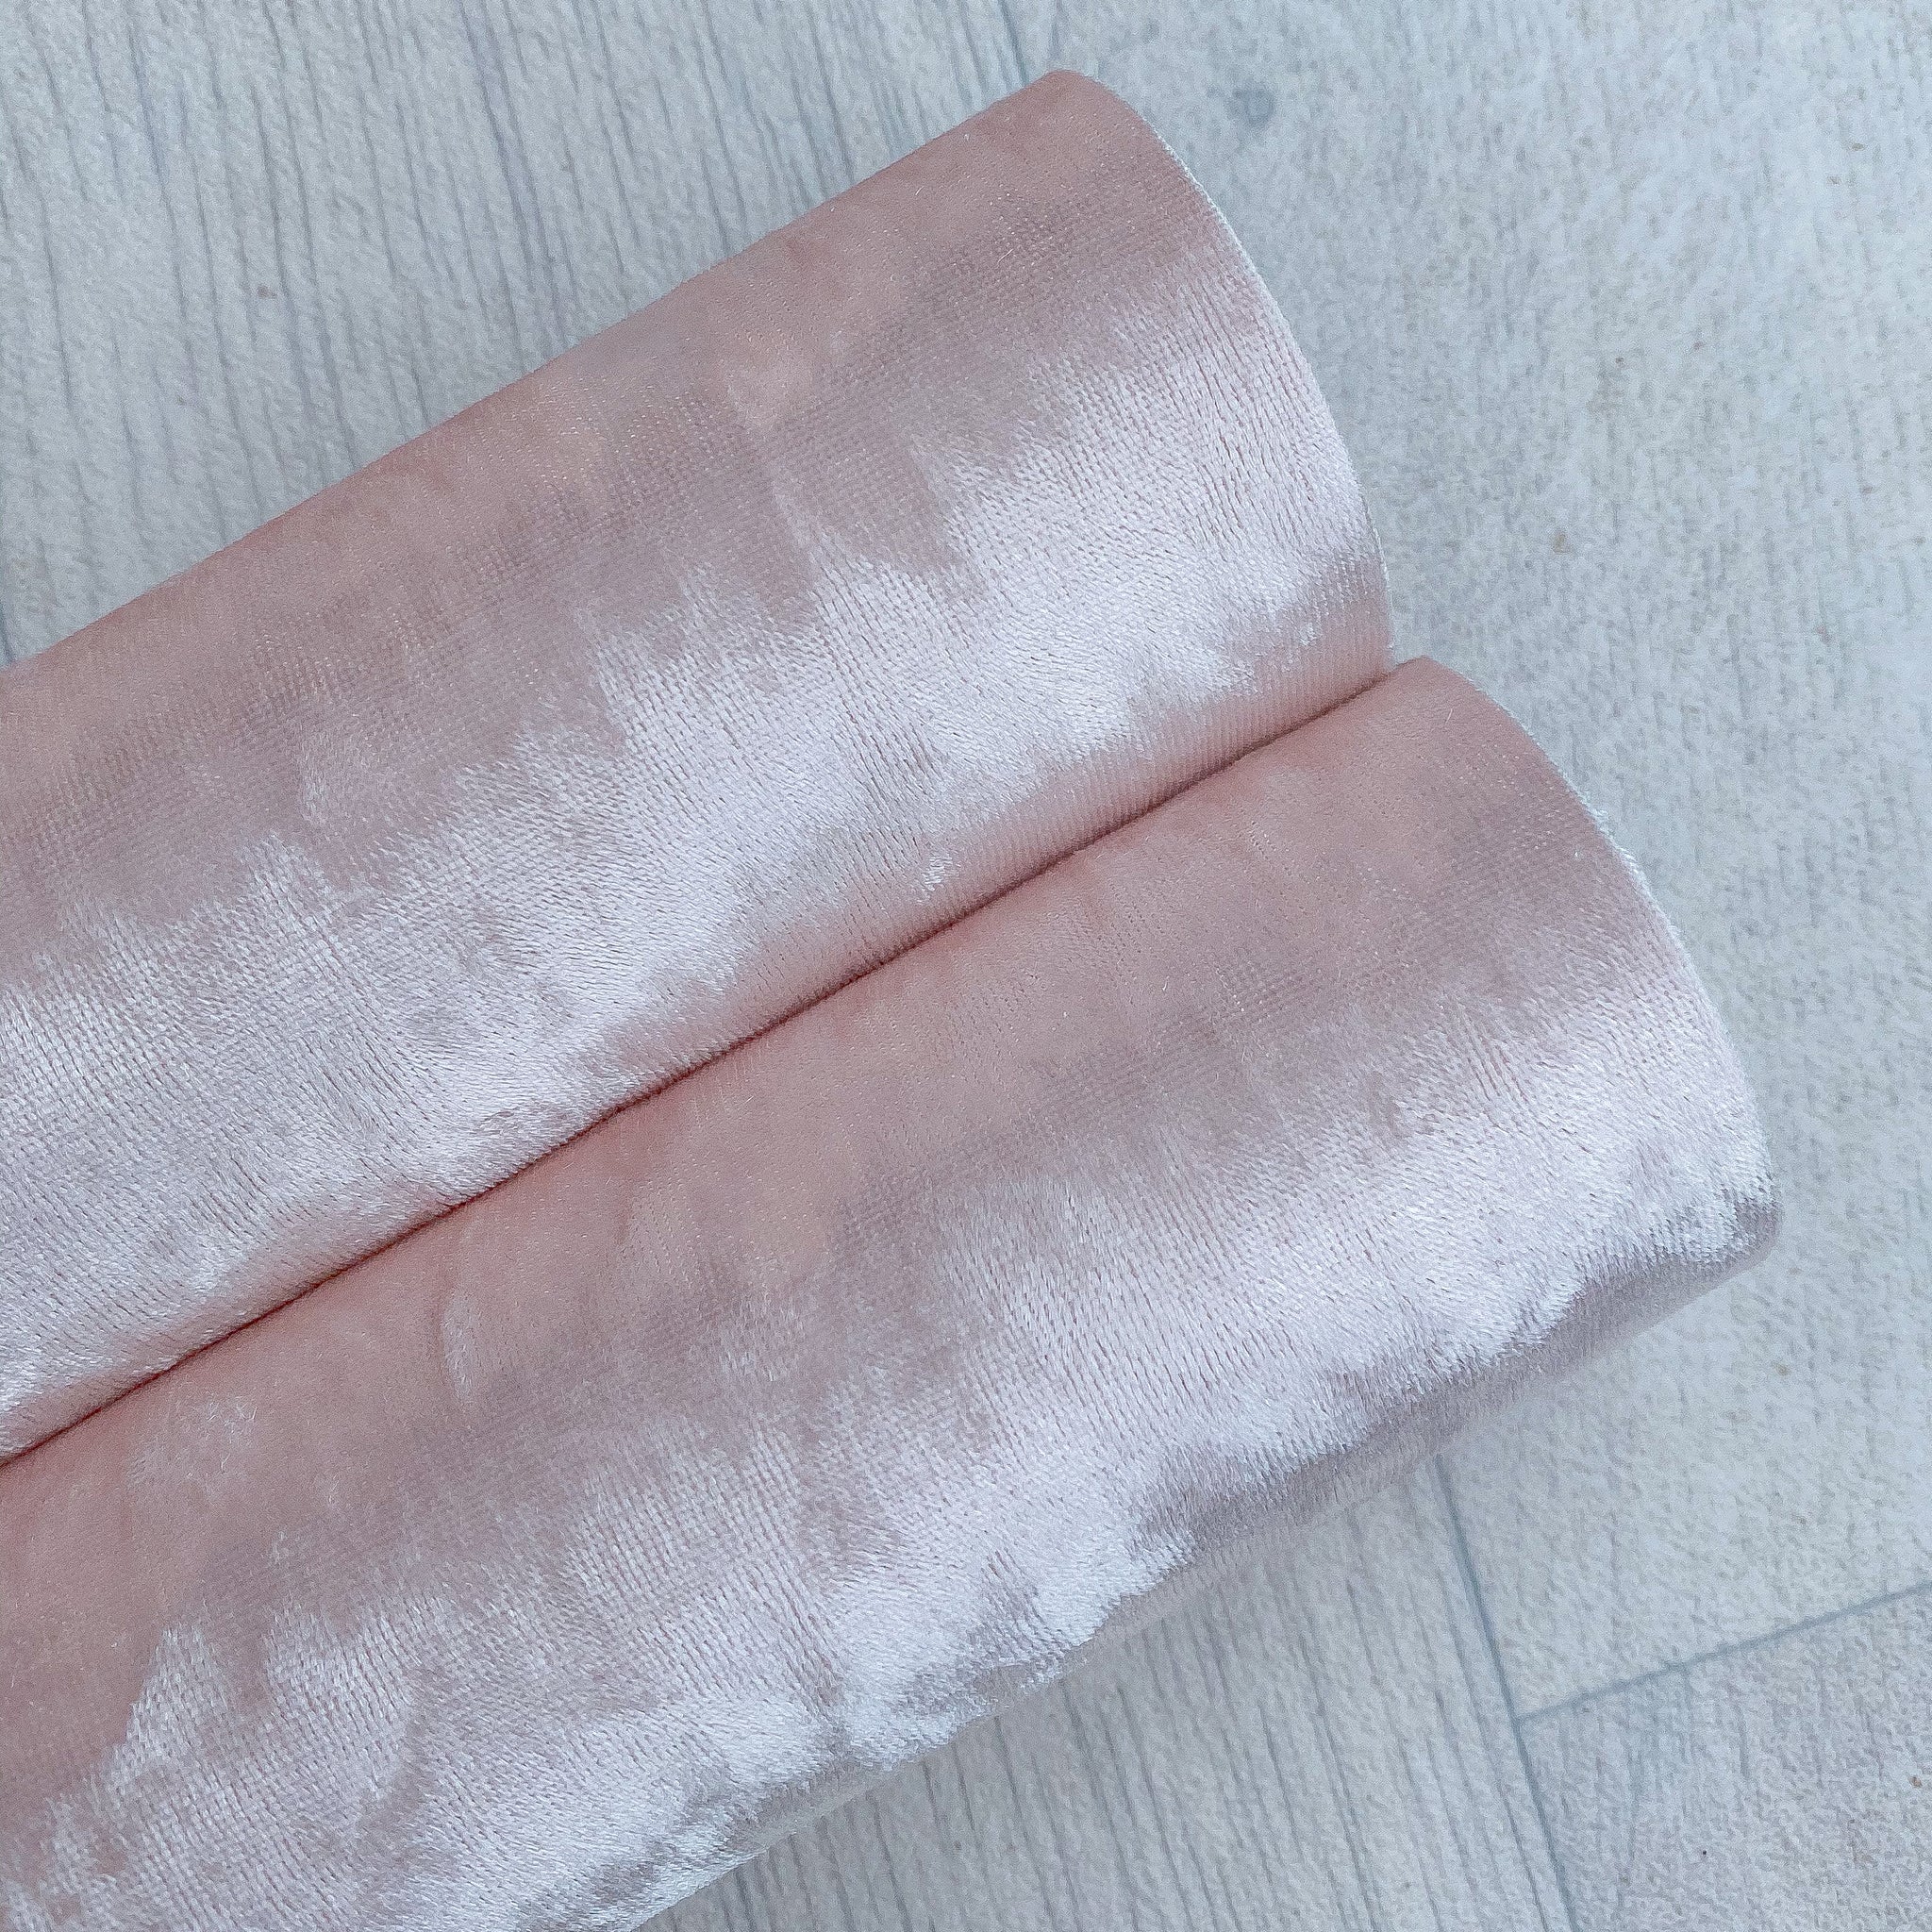 Crushed velvet pale pink sheet